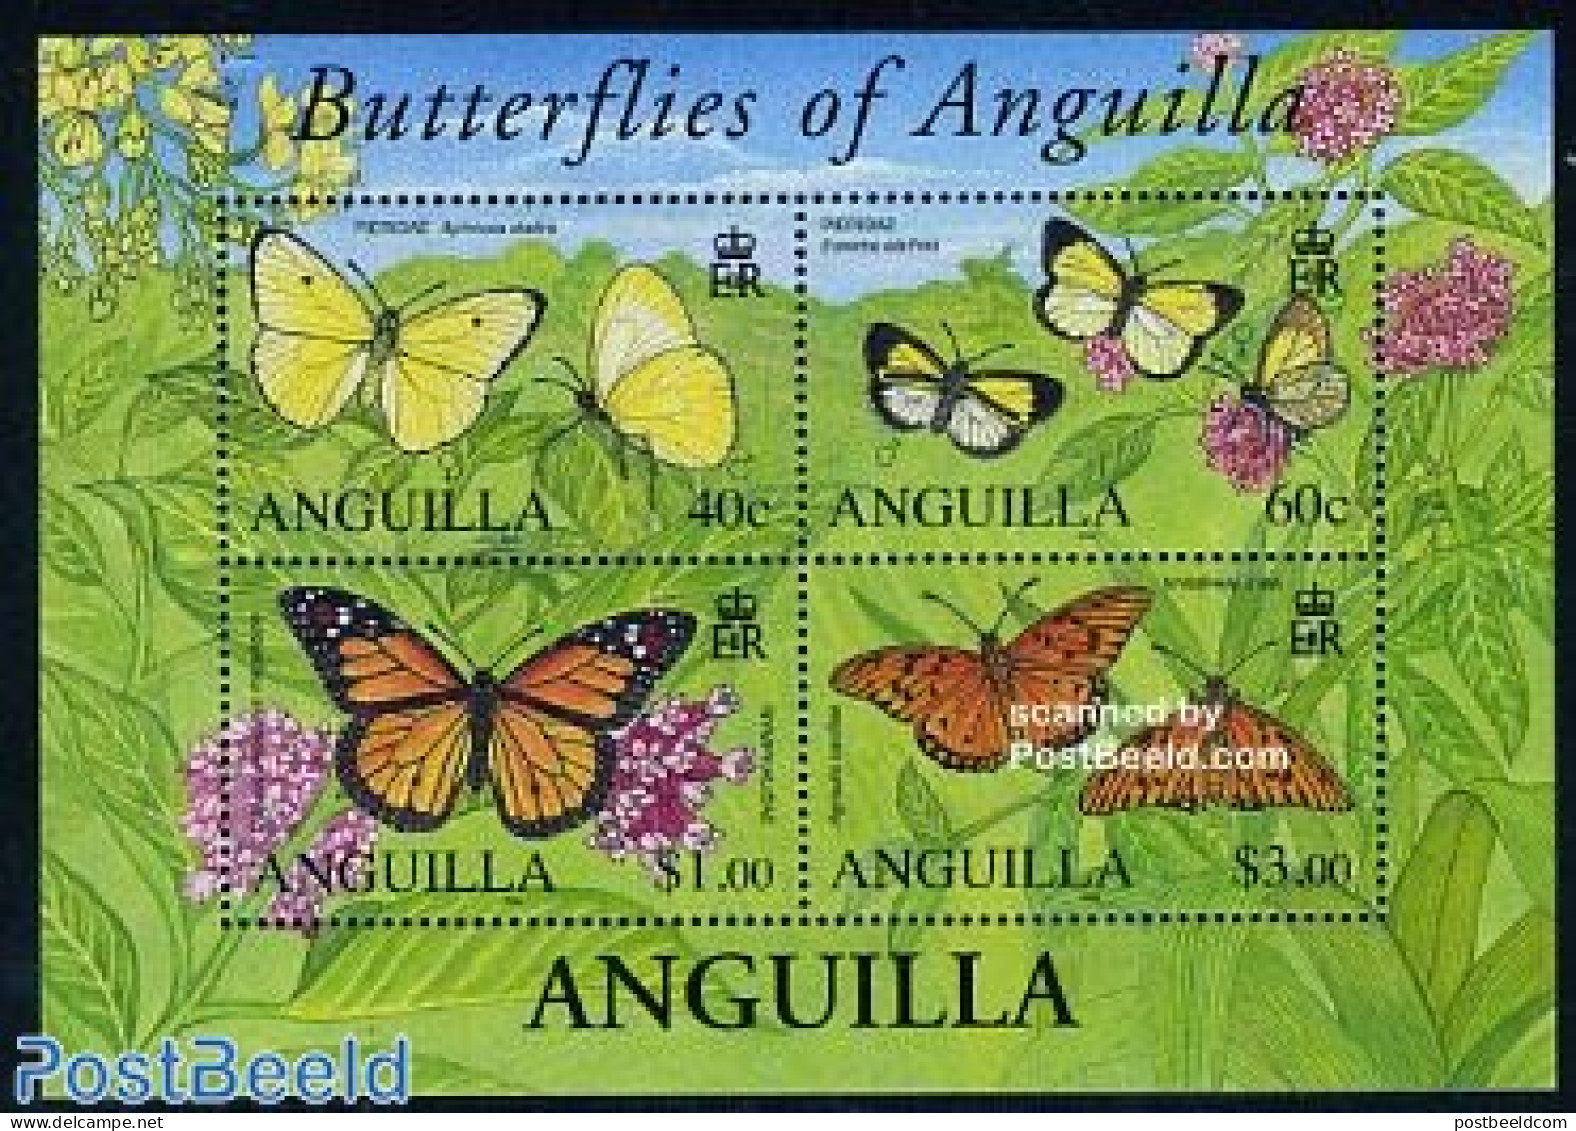 Anguilla 2006 Butterflies 4v M/s, Mint NH, Nature - Butterflies - Anguilla (1968-...)